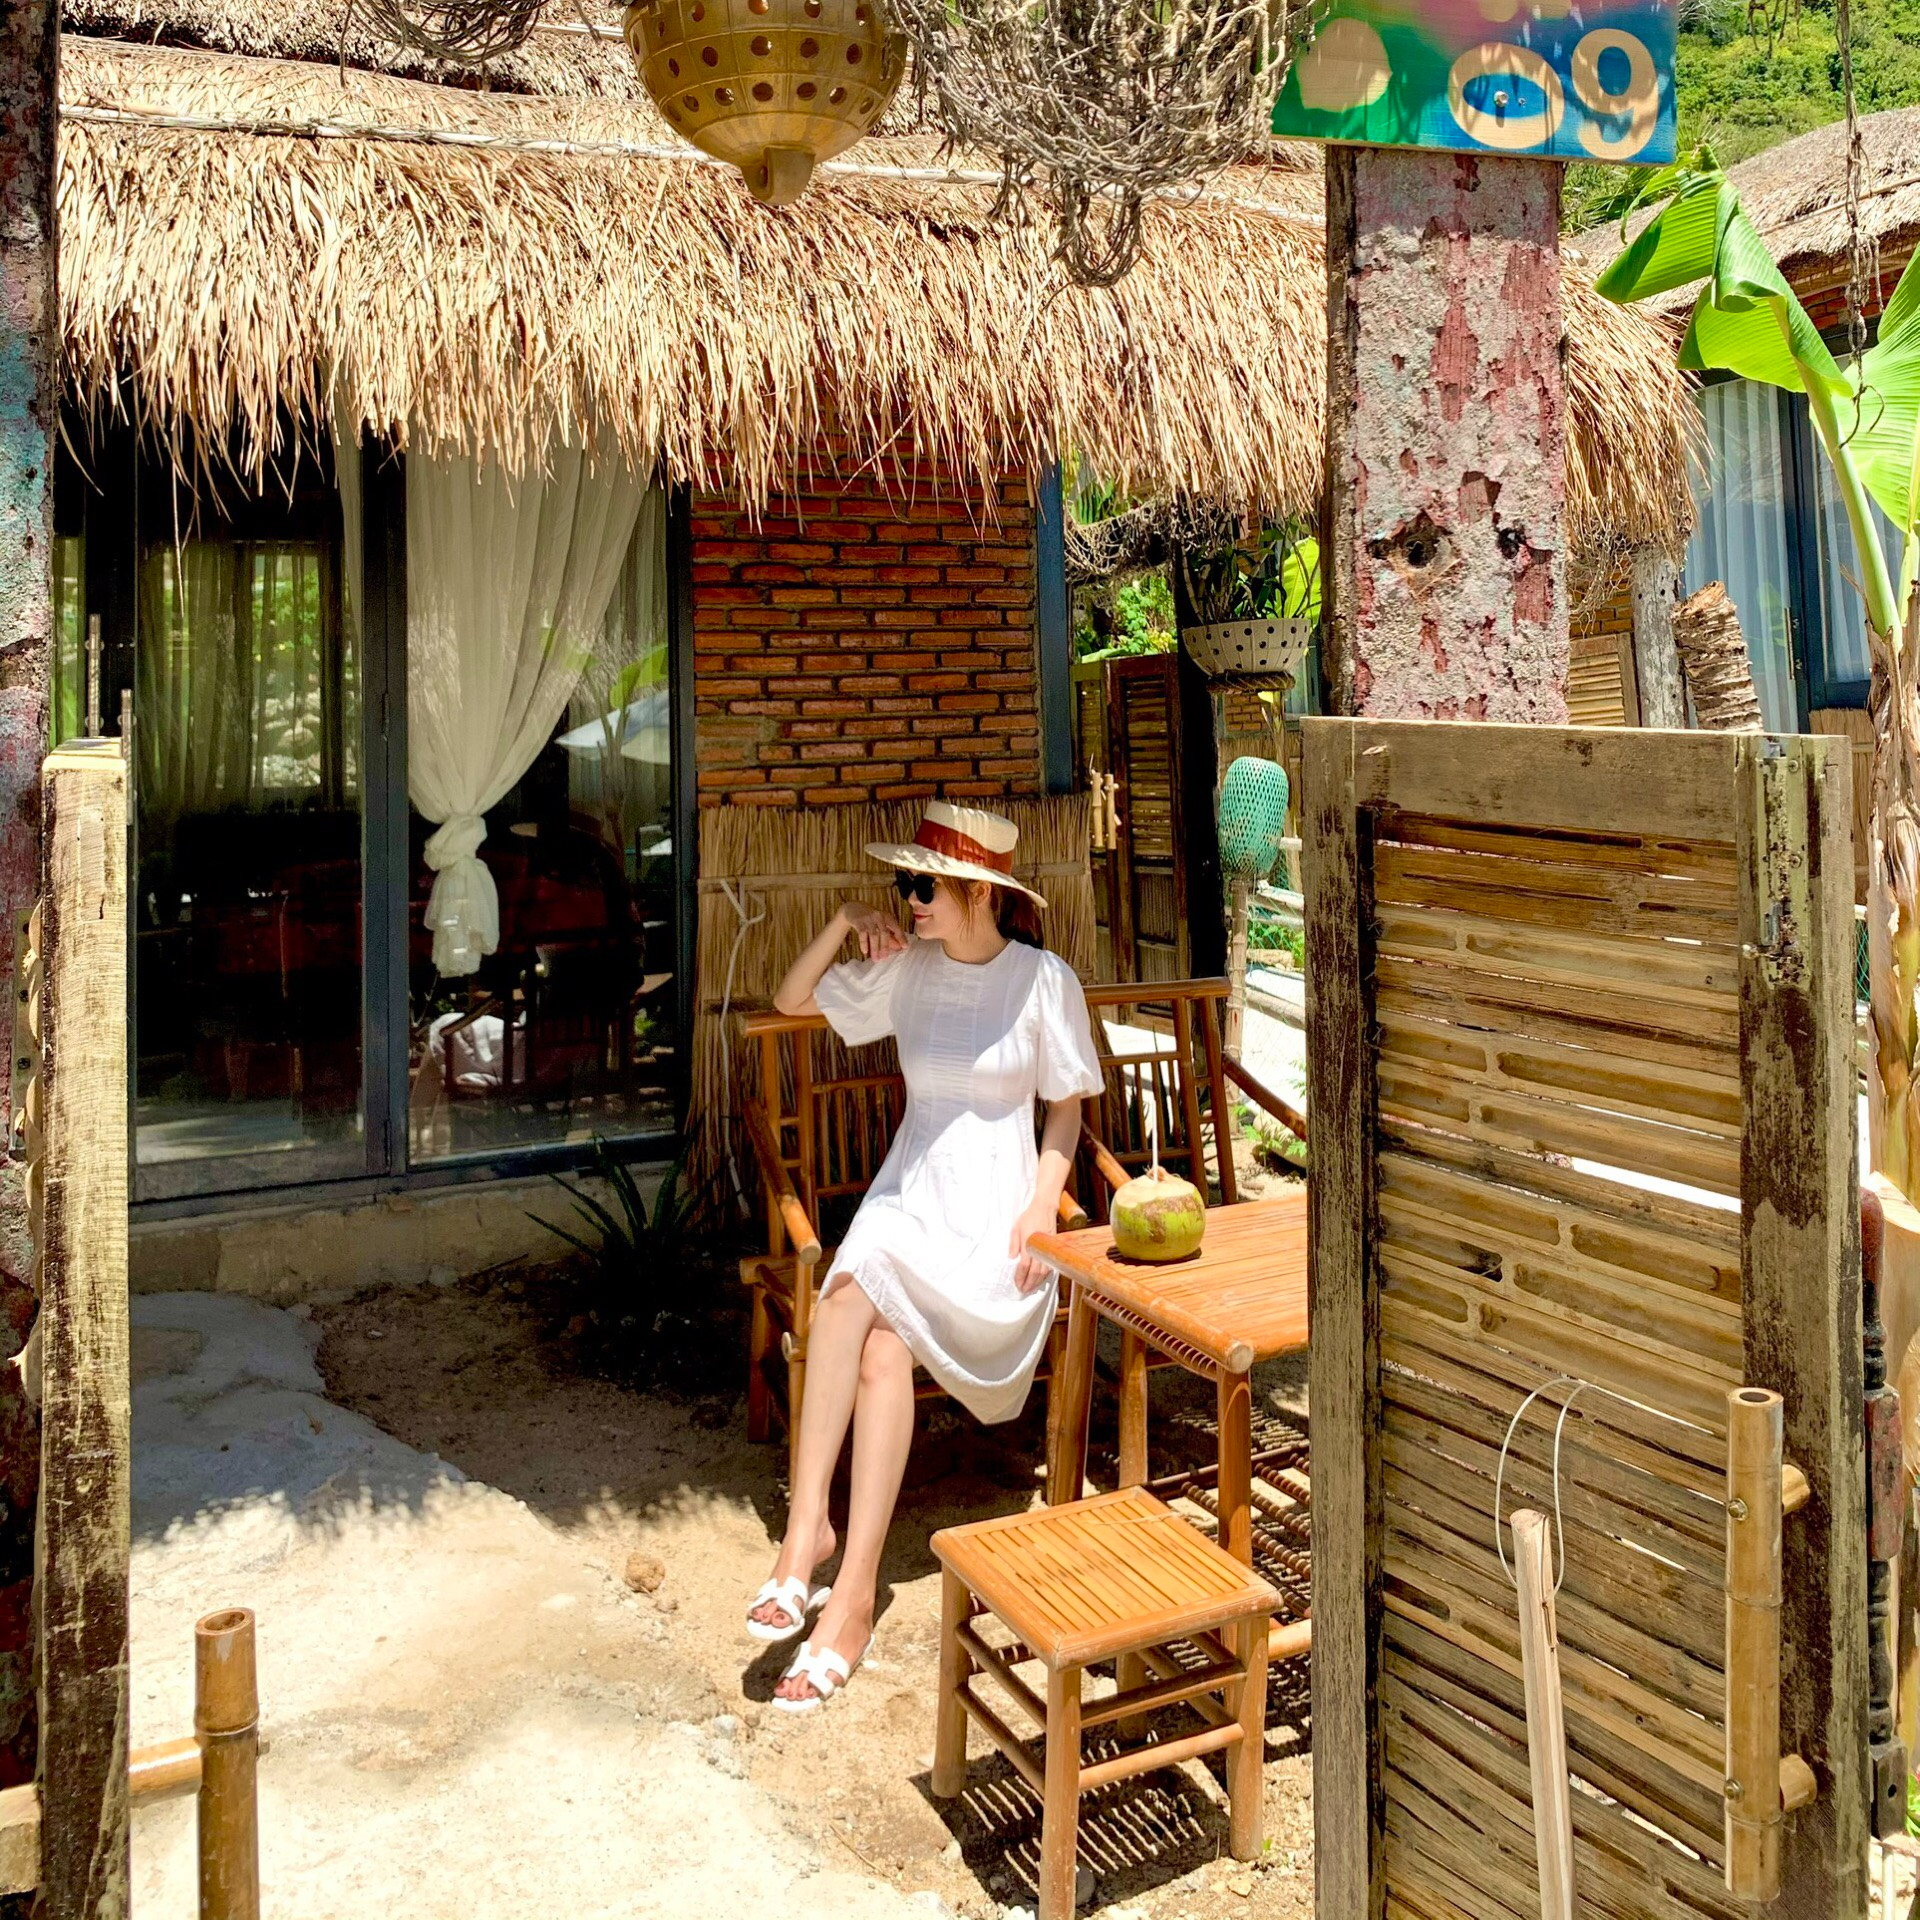 Tour Nha Trang - Ốc Đảo Robison Một Ngày Không Thể Quên . Khởi Hành Hàng Ngày 